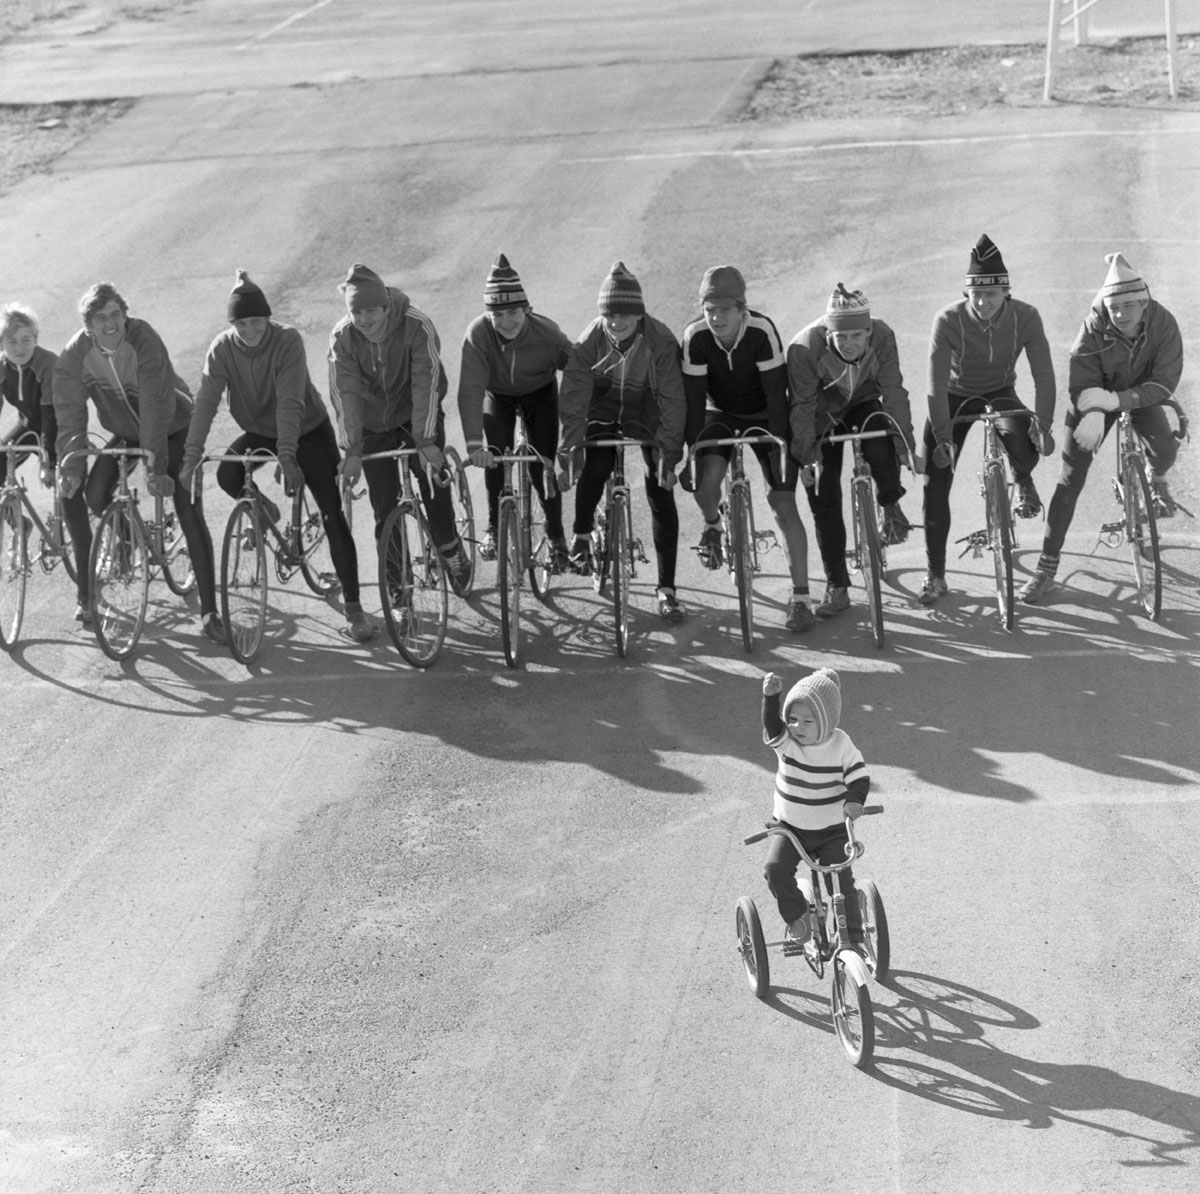 1986. Des étudiants dans la ville de Jambyl (aujourd’hui Taraz, Kazakhstan) sur la ligne de départ avant une course de vélo.